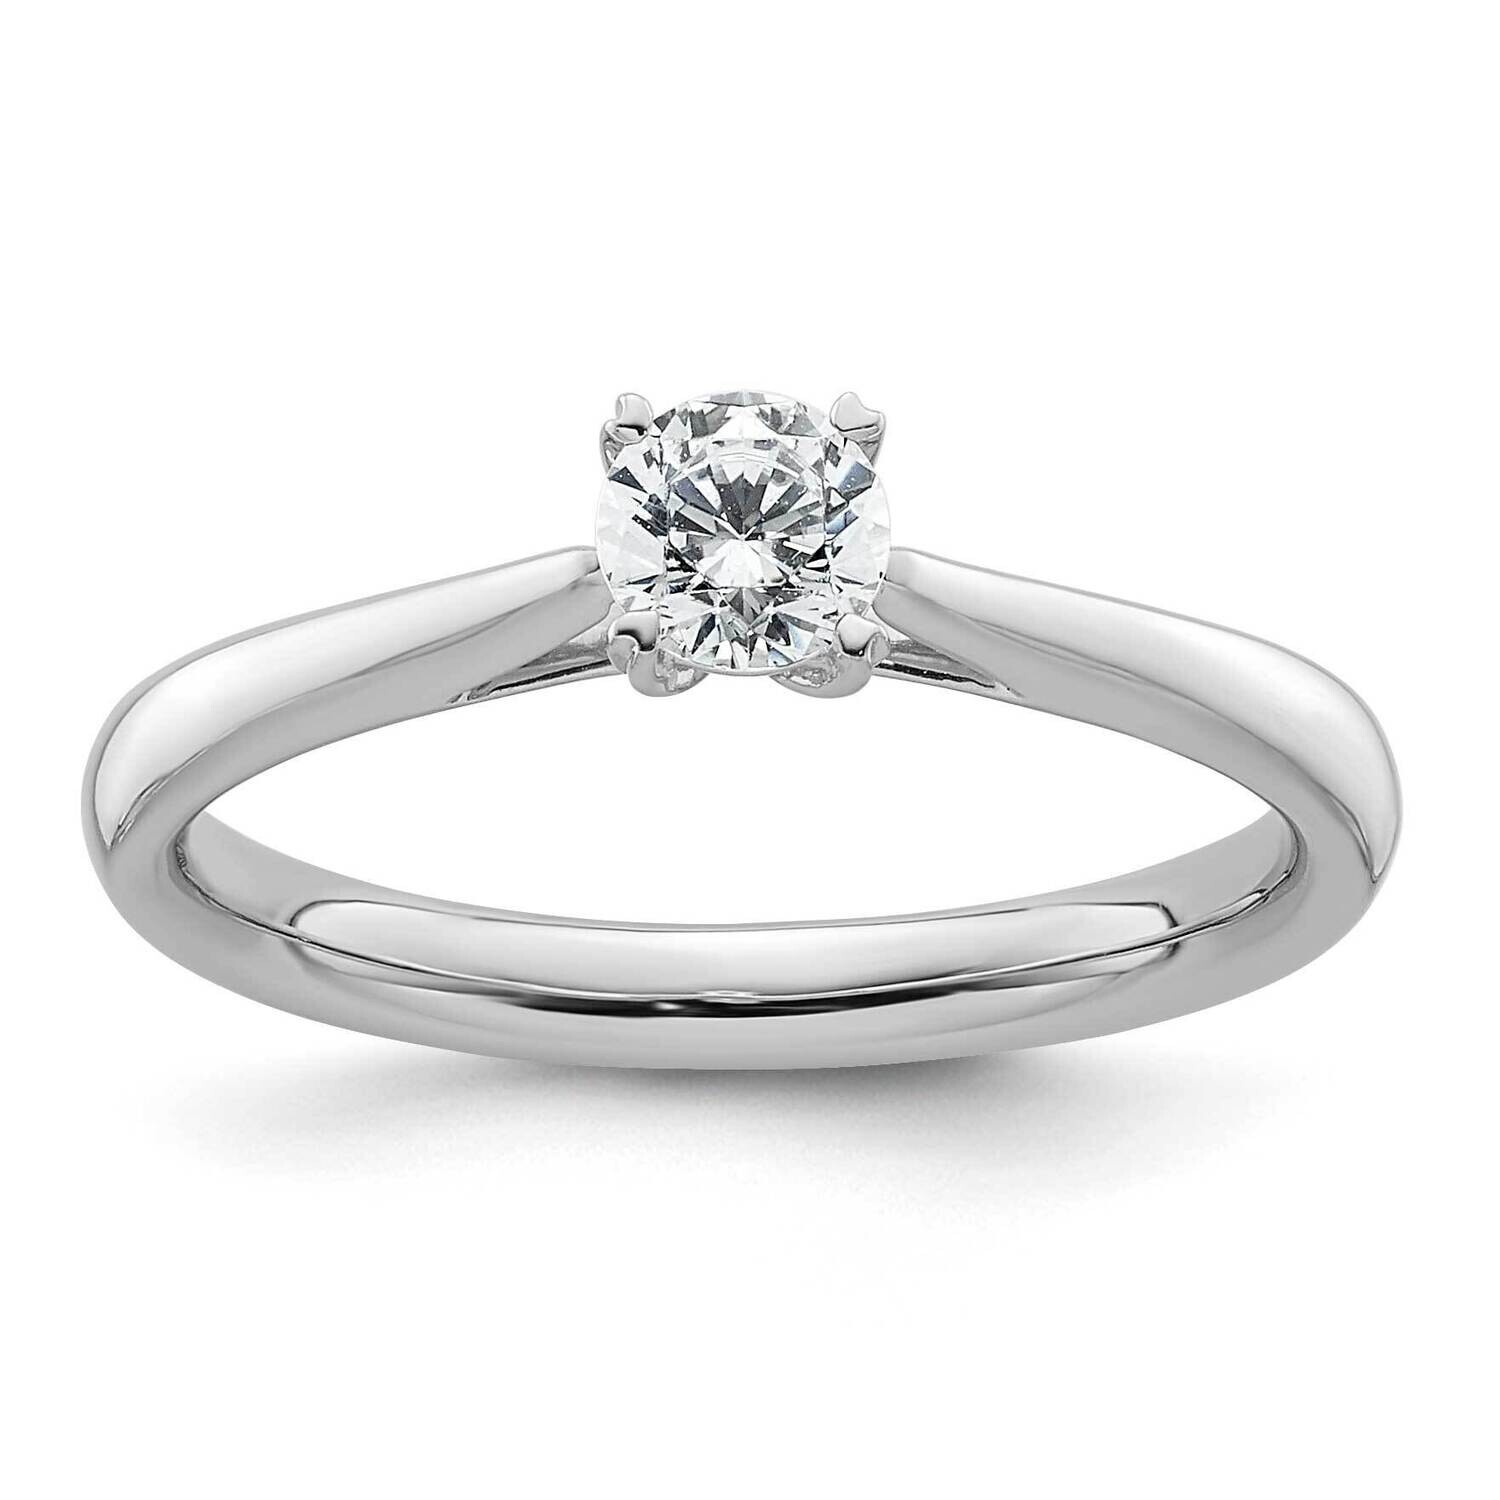 True Origin 1/3 Carat Diamond Vs/Si D E F Round Solitare Engagement Ring 14k White Gold RM1930E-033-WAA